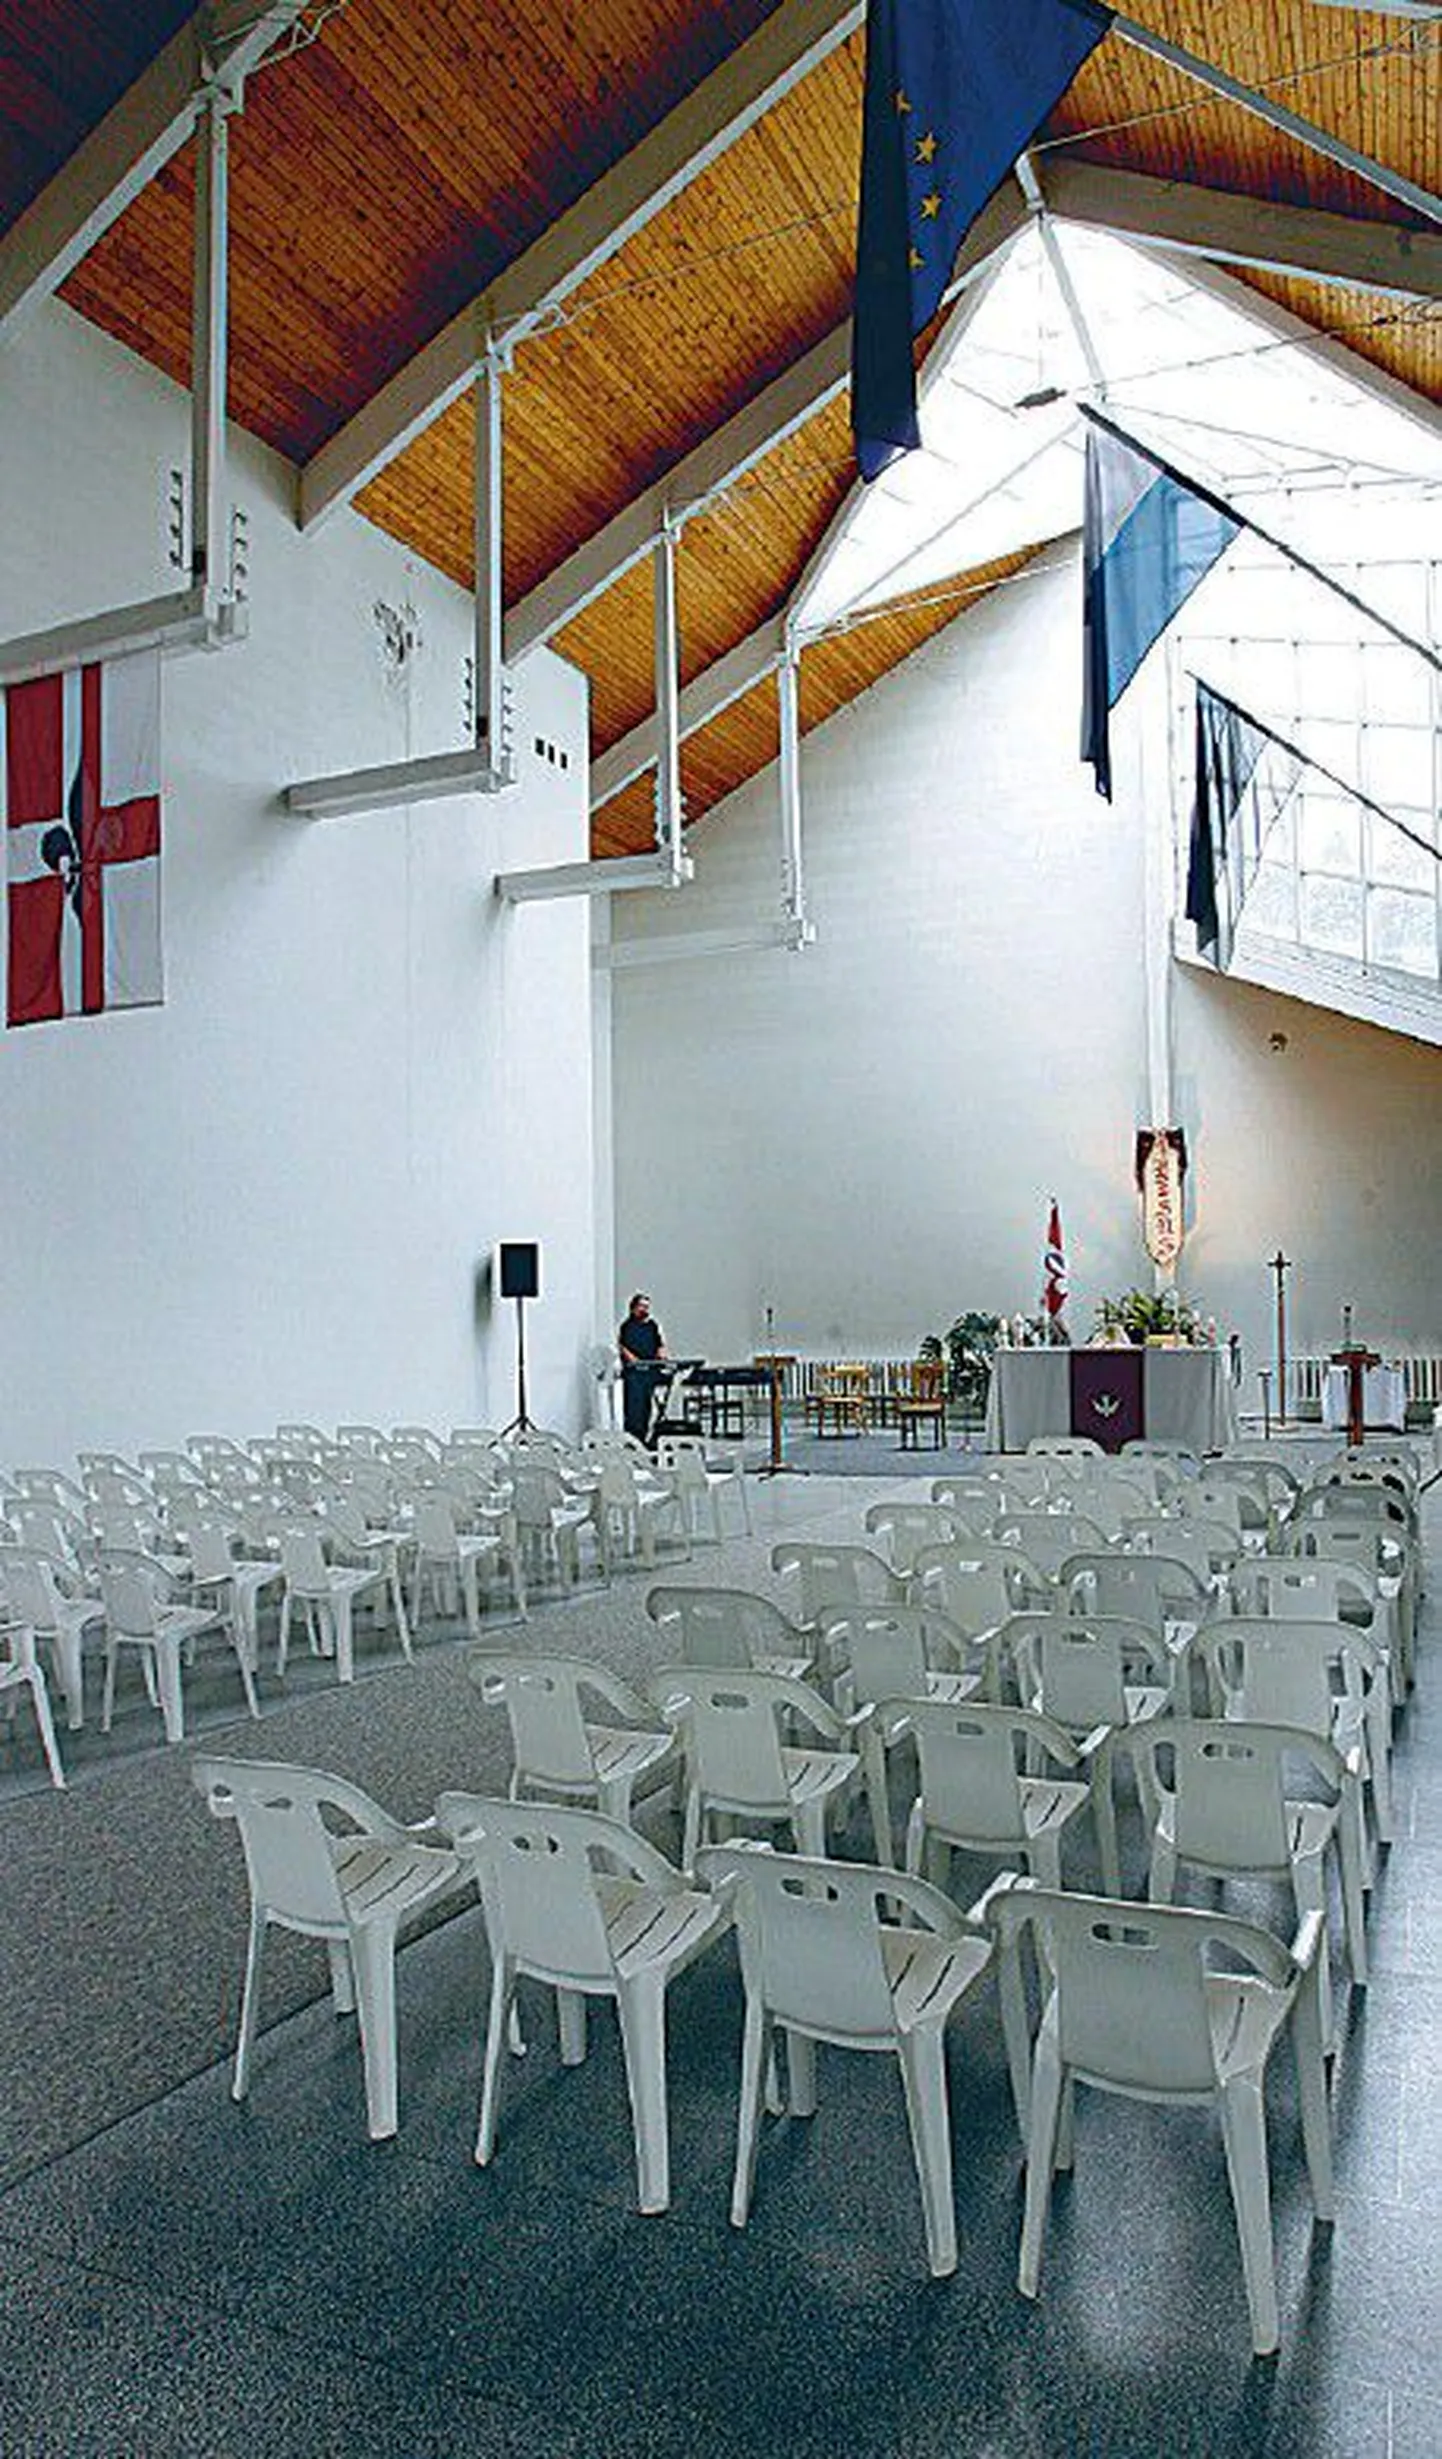 Väljaehitamist ootab altar ning väljavahetamist vajavad koguduse
toolid. Kõrge ruumi suurim pluss on laulukoore meelitav
akustika ja palju valgust.